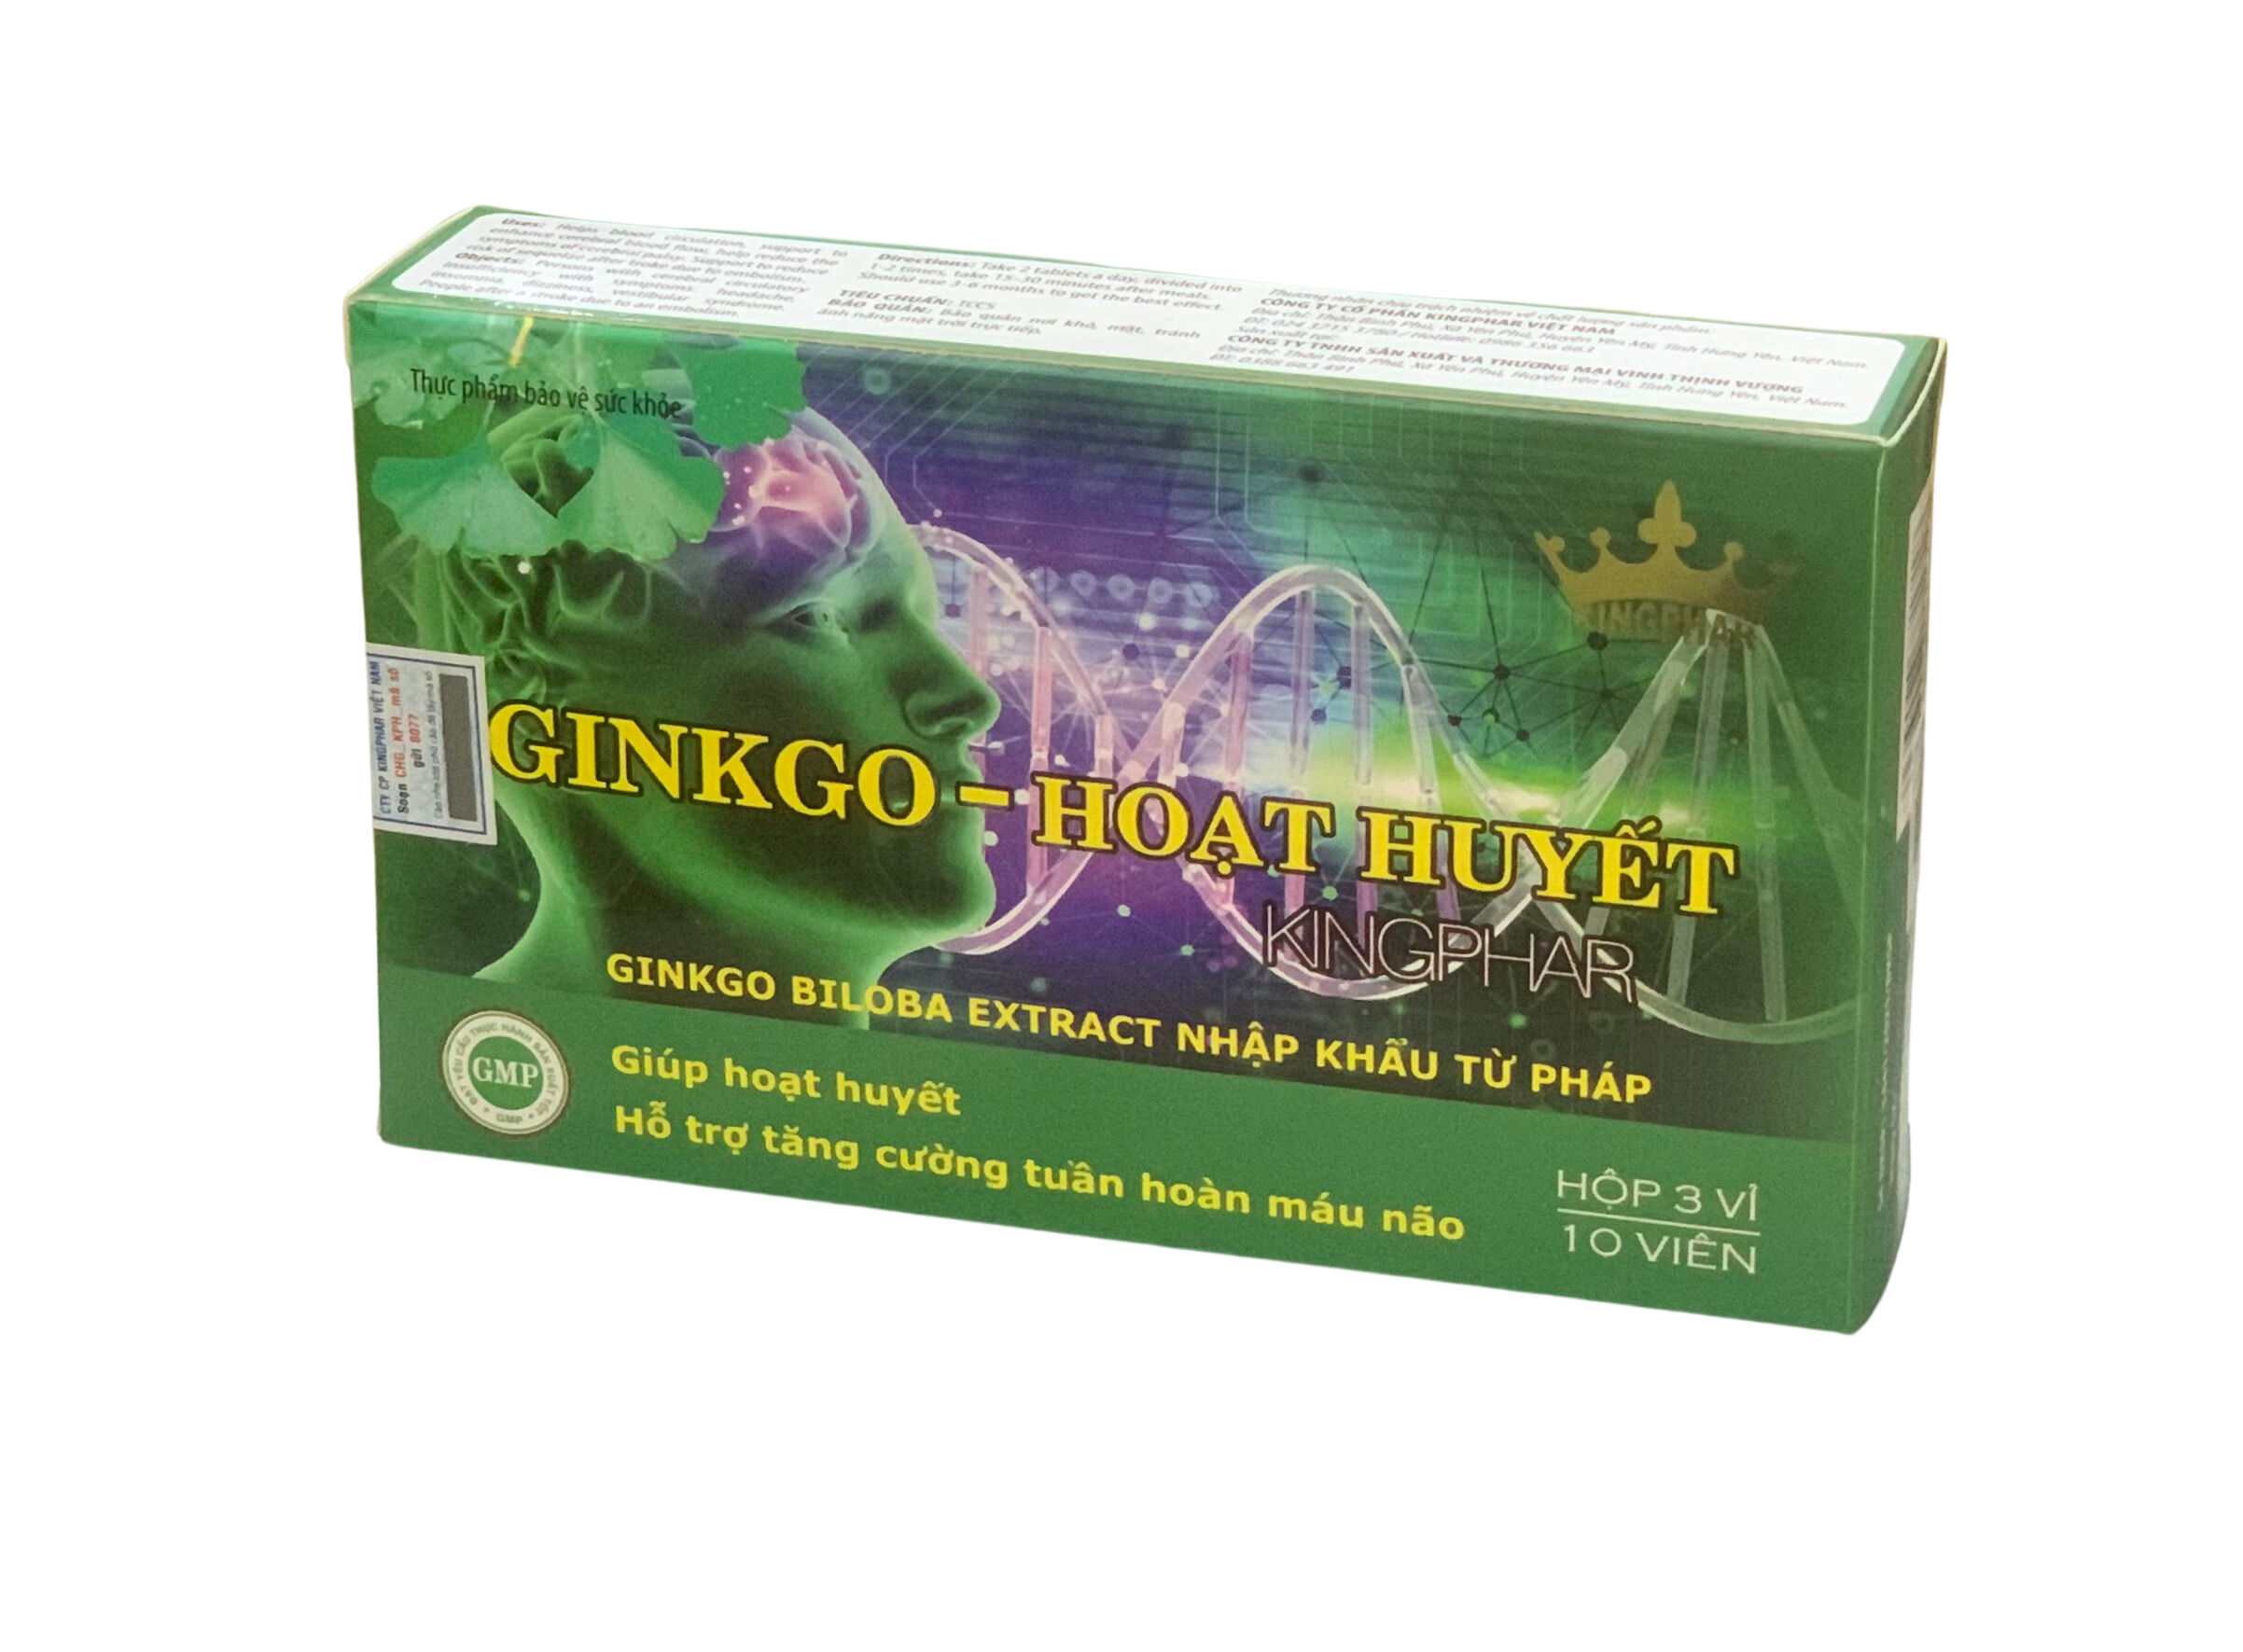 Viên uống tăng cường tuần hoàn não Ginkgo - Hoạt huyết Kingphar, hộp 30v